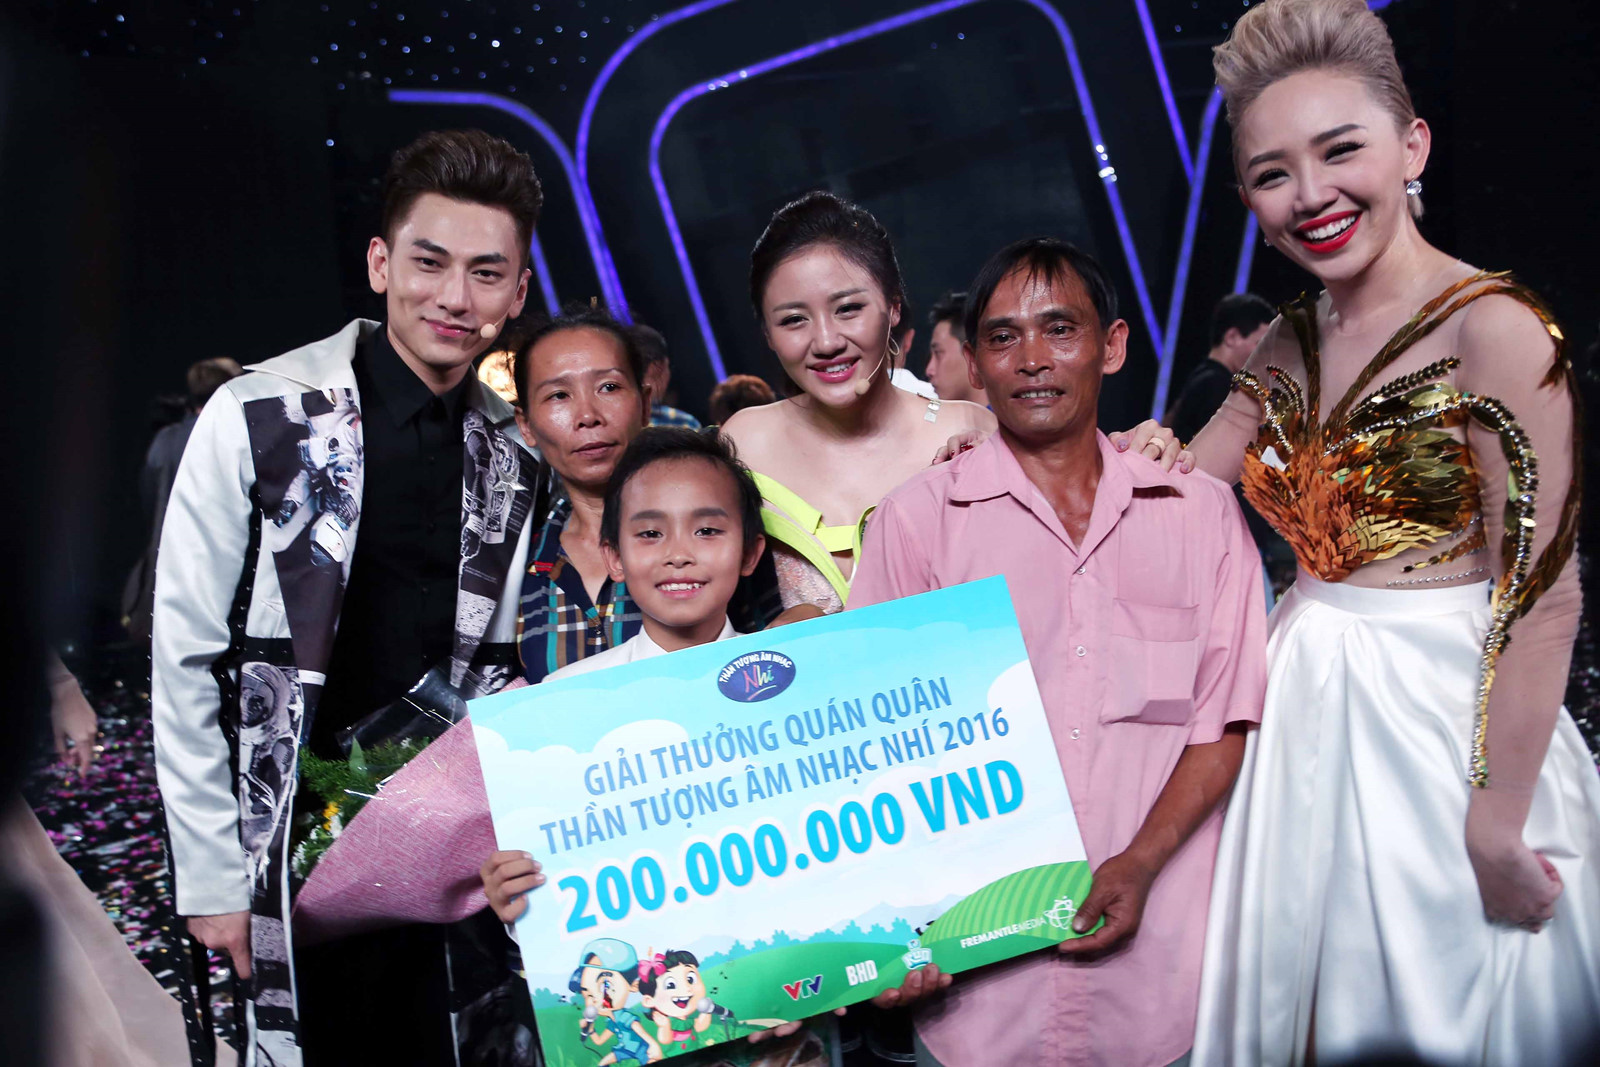 Hồ Văn Cường đã xuất sắc giành ngôi vị quán quân Vietnam Idol Kids 2016